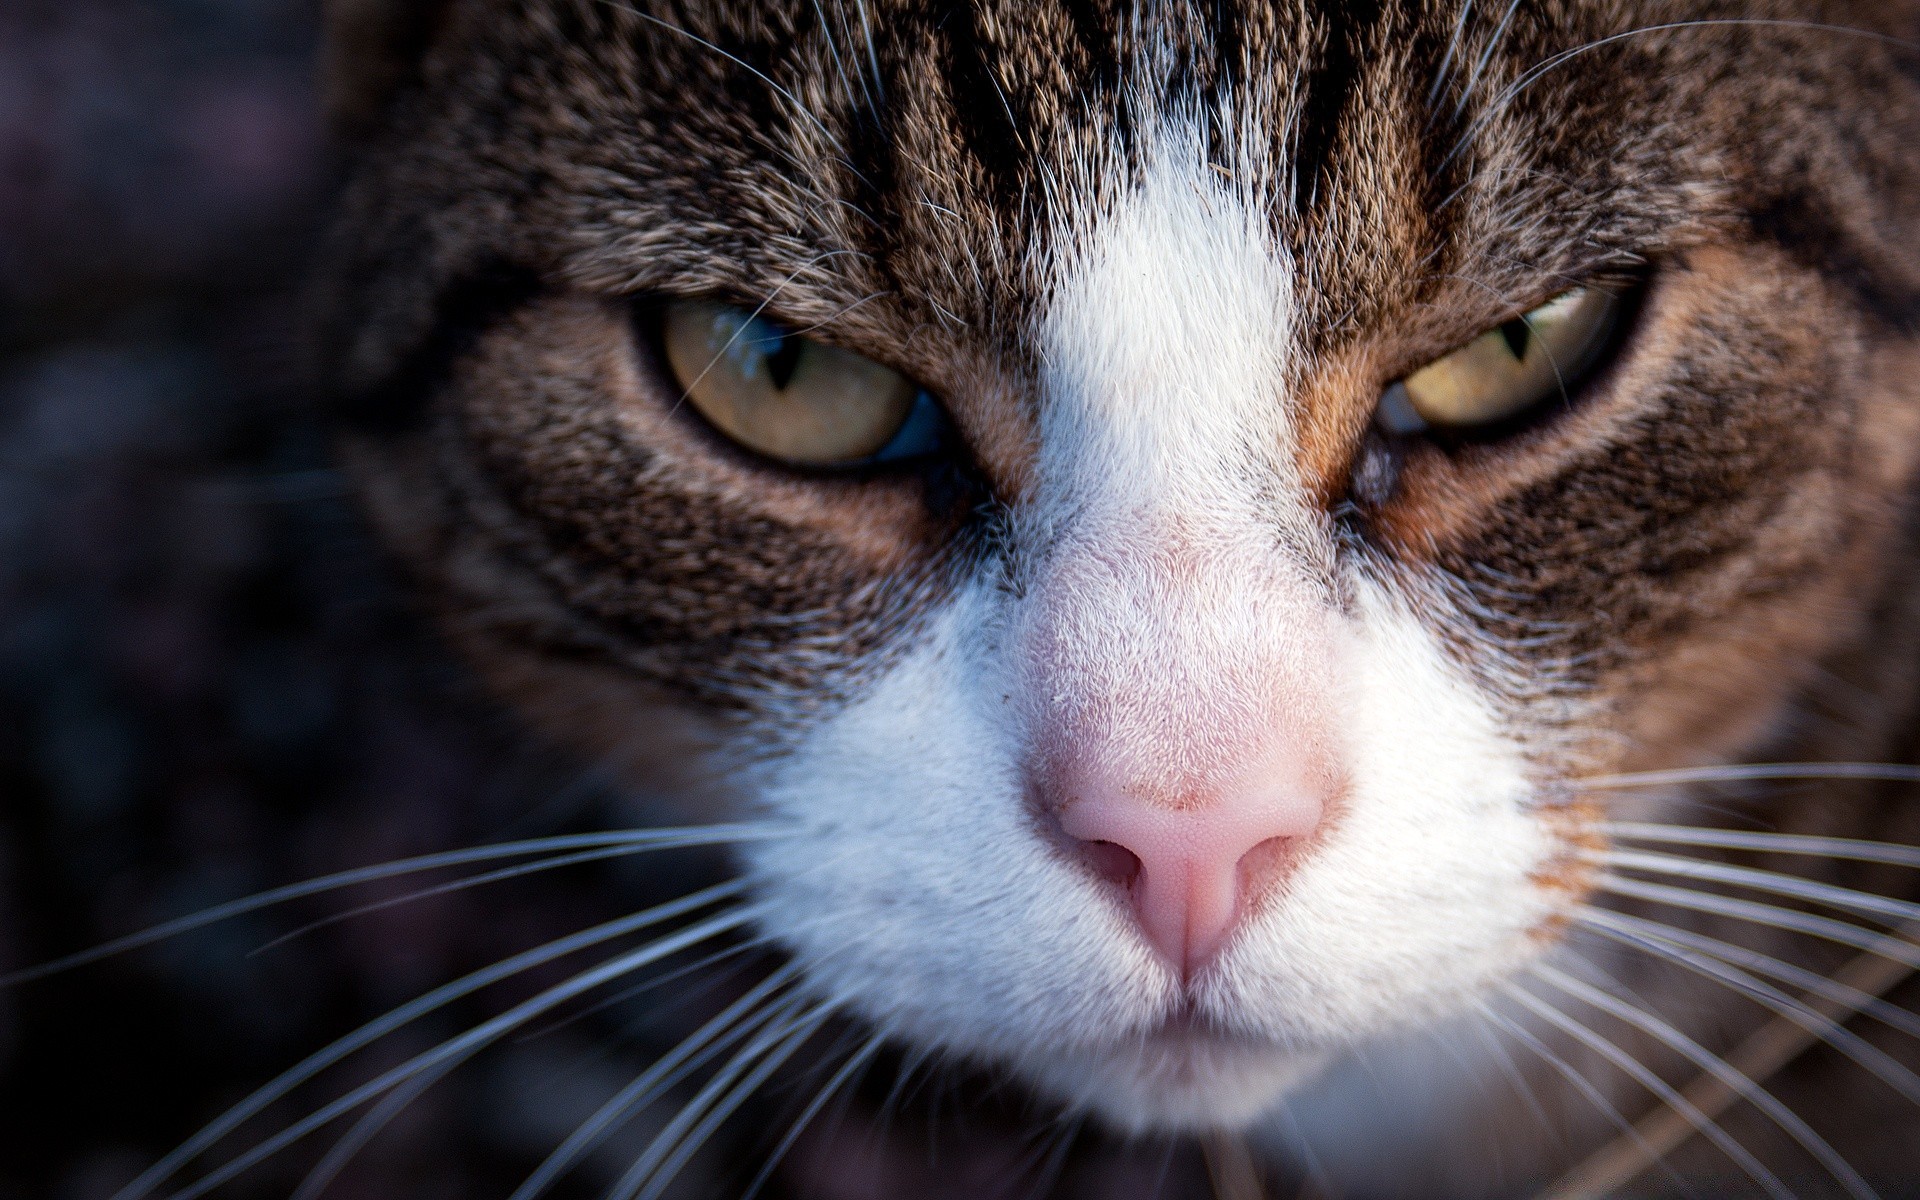 кошки глаз милые кошка мех портрет пэт глава волосы молодой животное млекопитающее ус просмотр глядя нос котенок отечественные пуховый любопытство довольно